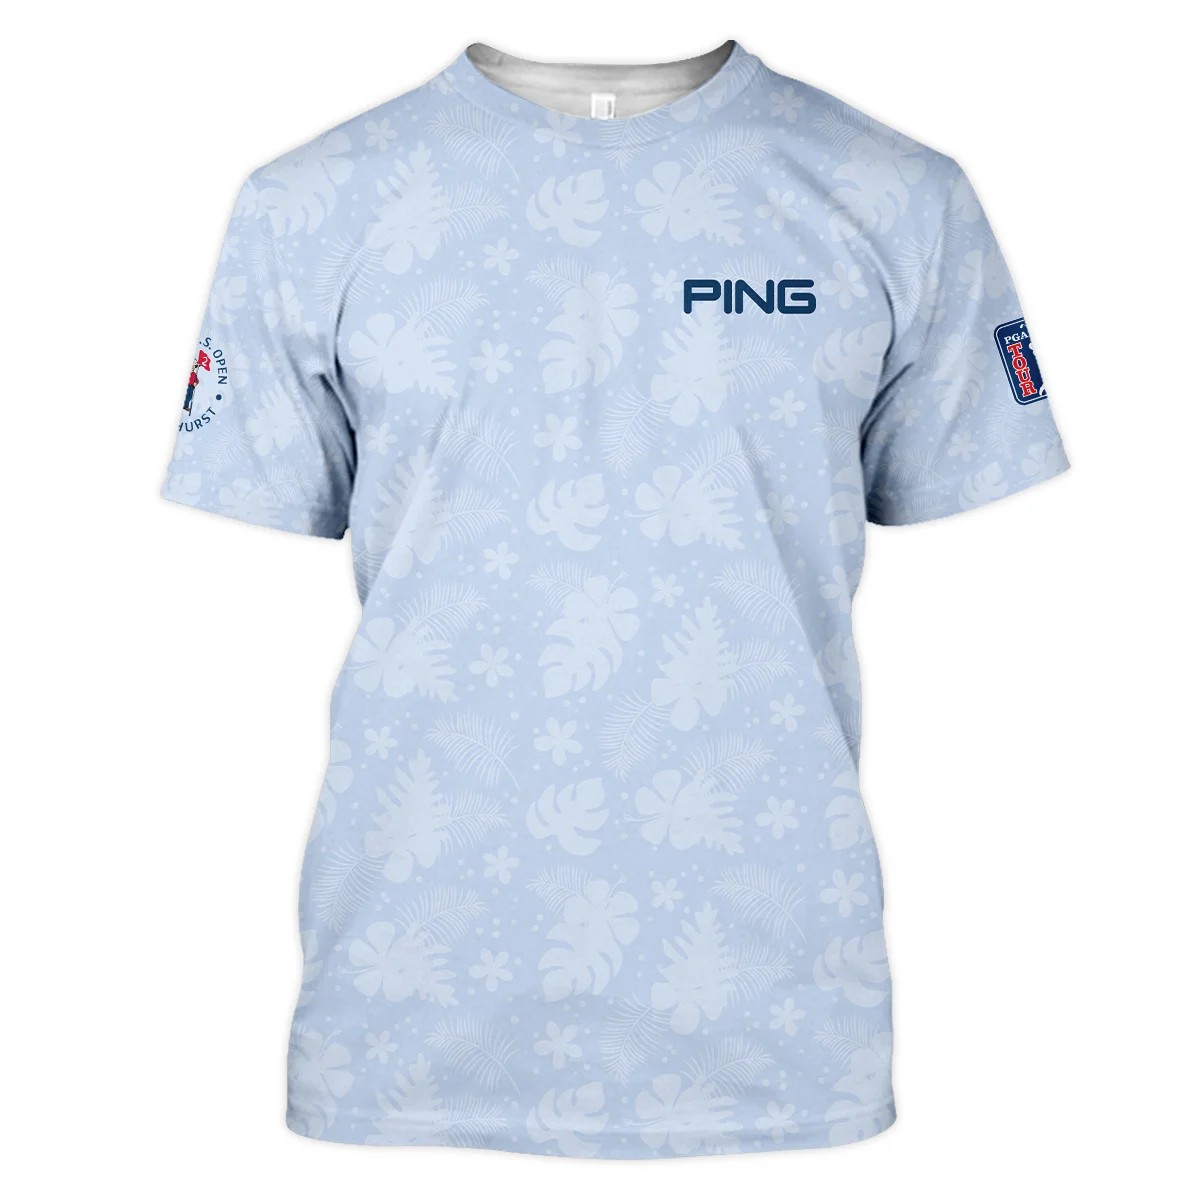 124th U.S. Open Pinehurst Ping Golf Zipper Polo Shirt Light Blue Pastel Floral Hawaiian Pattern All Over Print Zipper Polo Shirt For Men